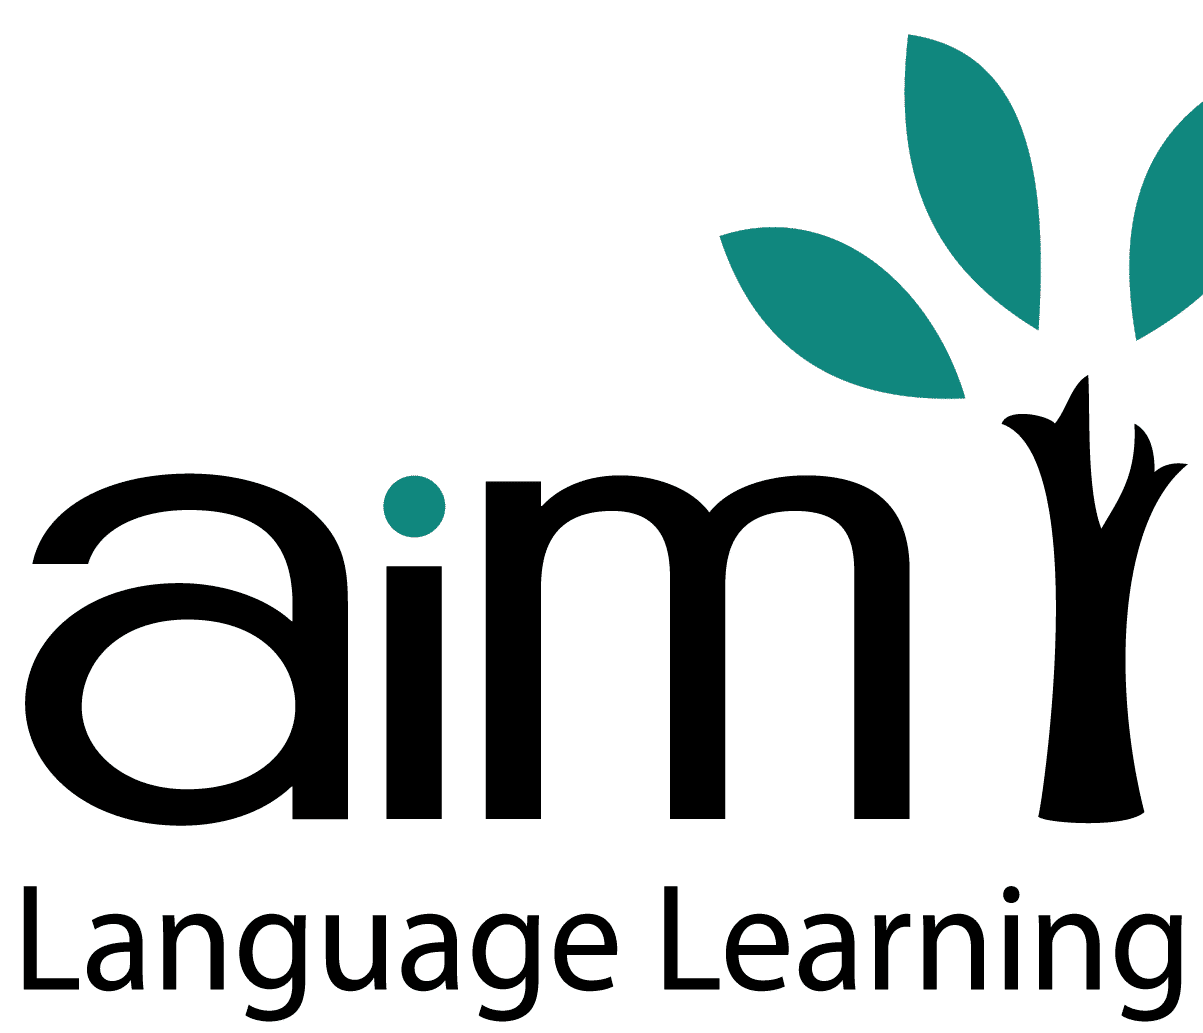 aim-language-learning-logo